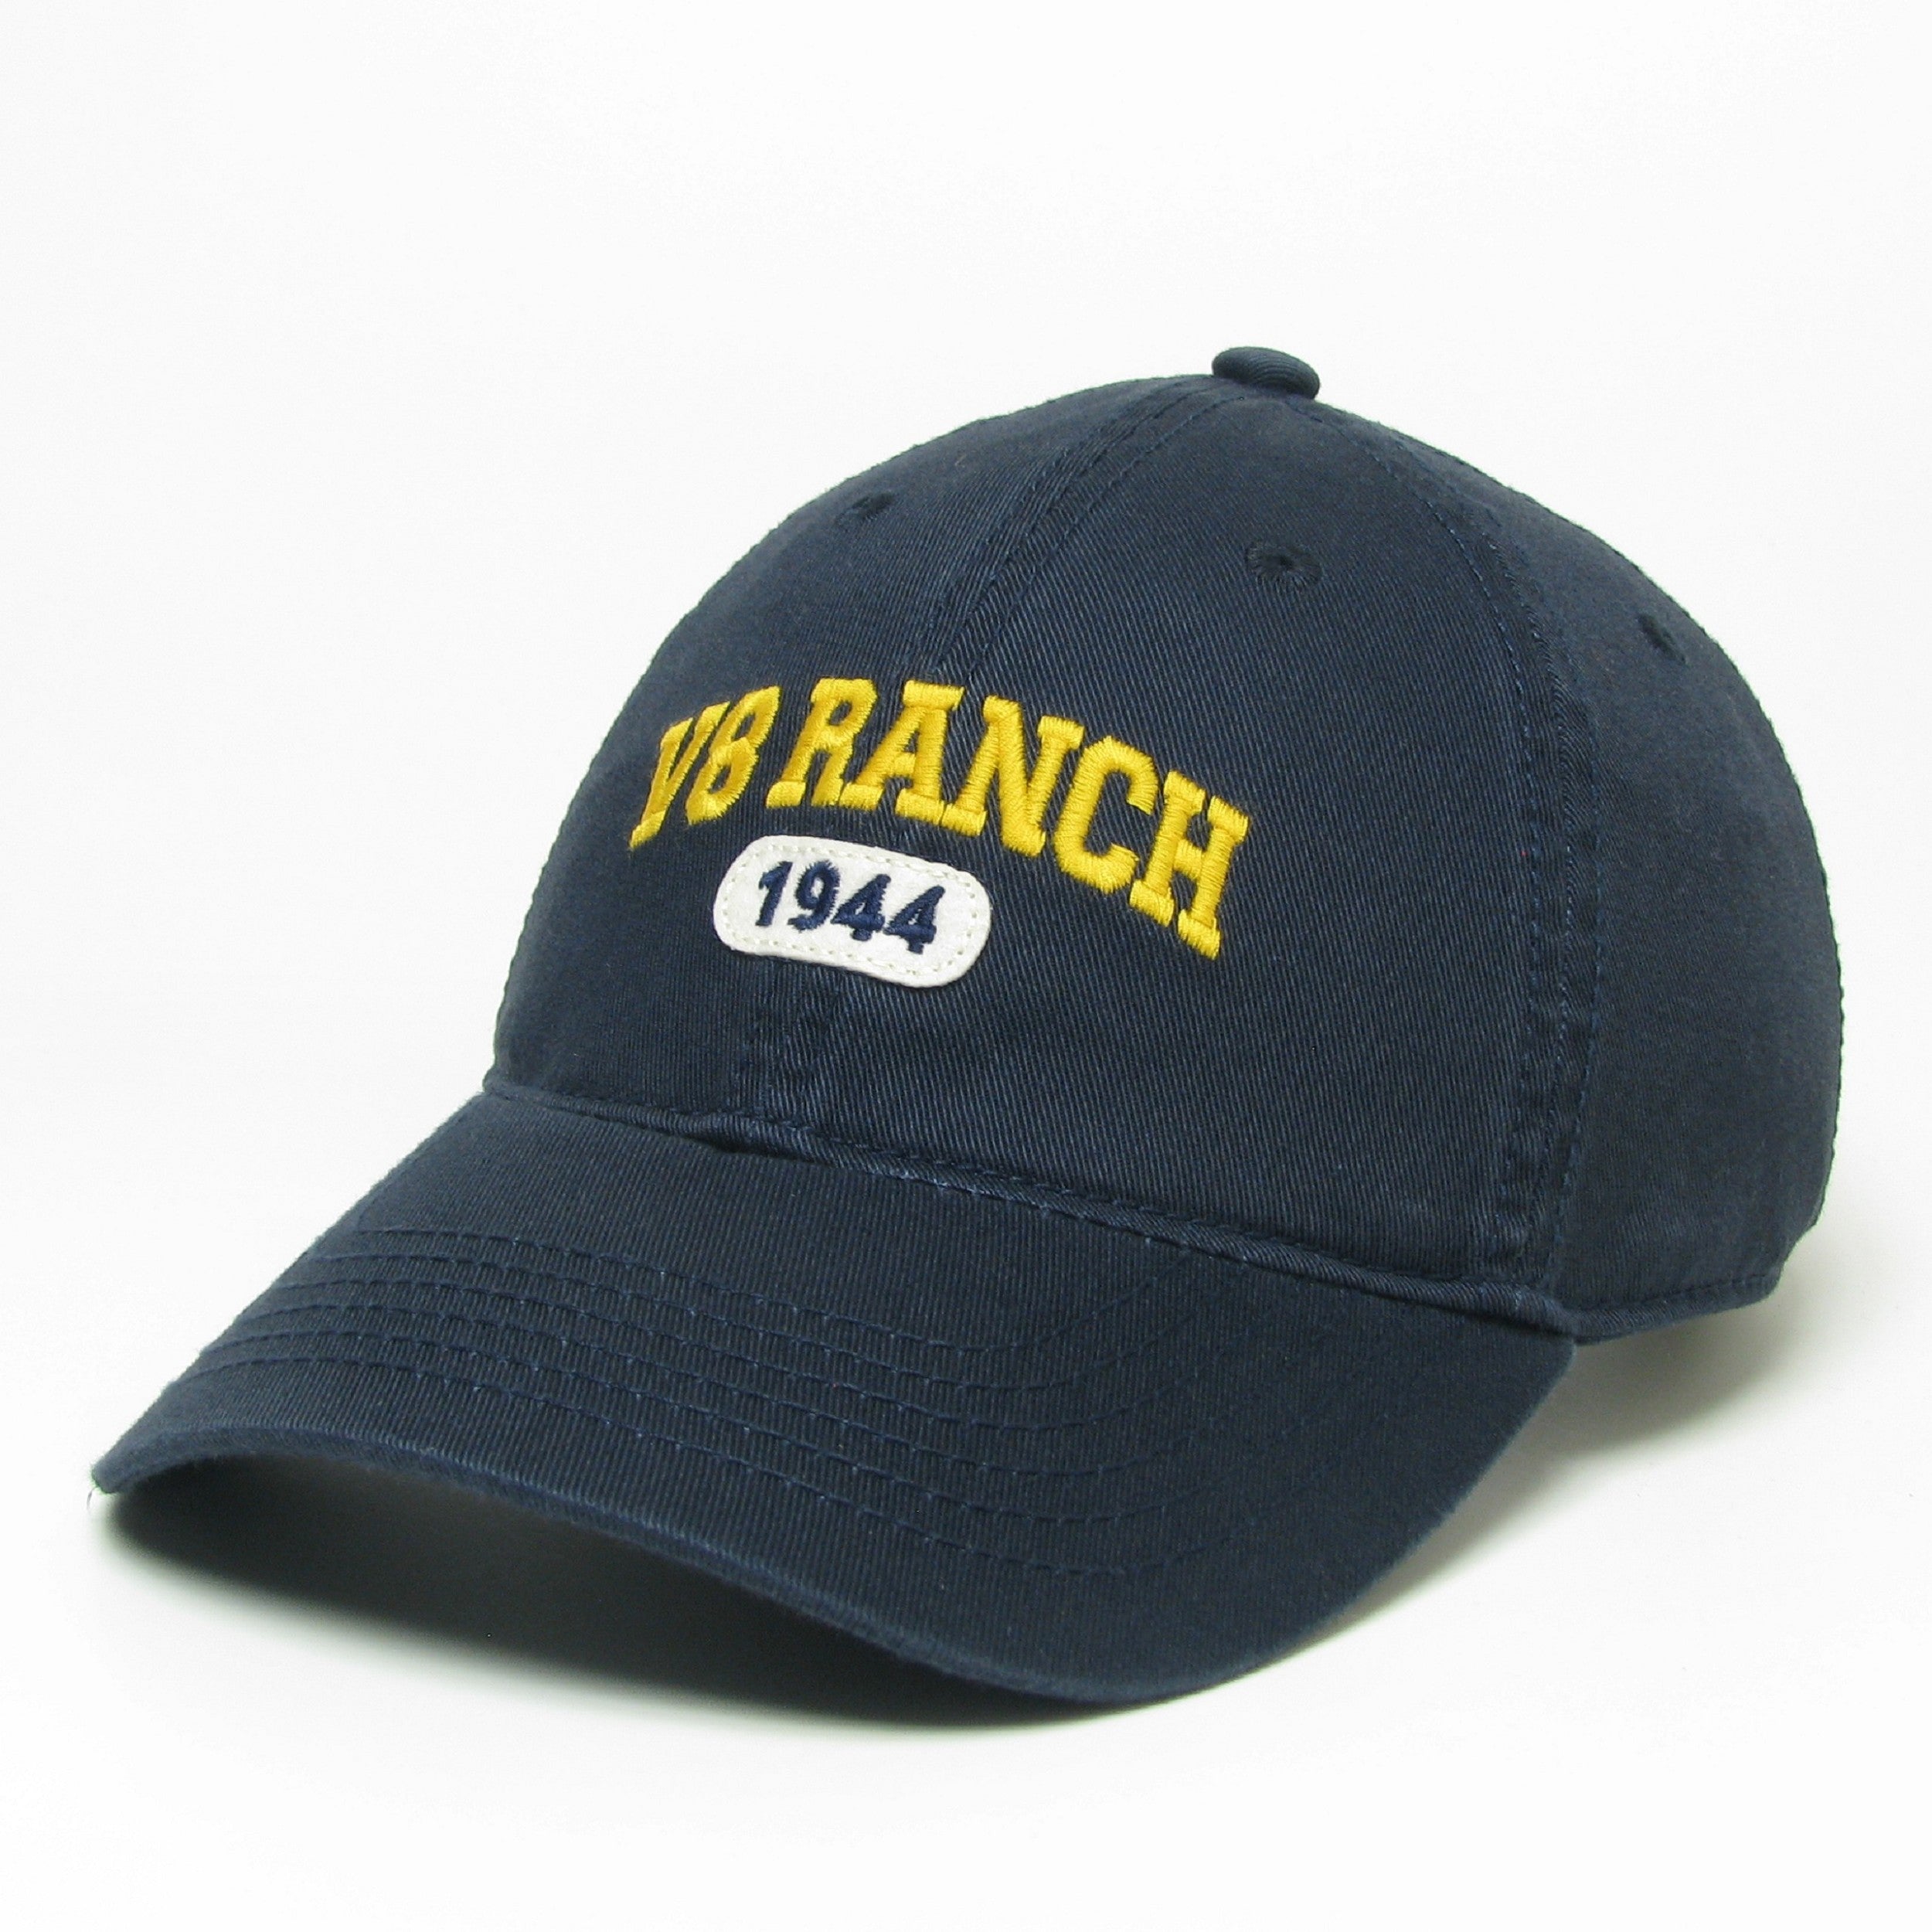 V8 Ranch 1944 Navy Cap